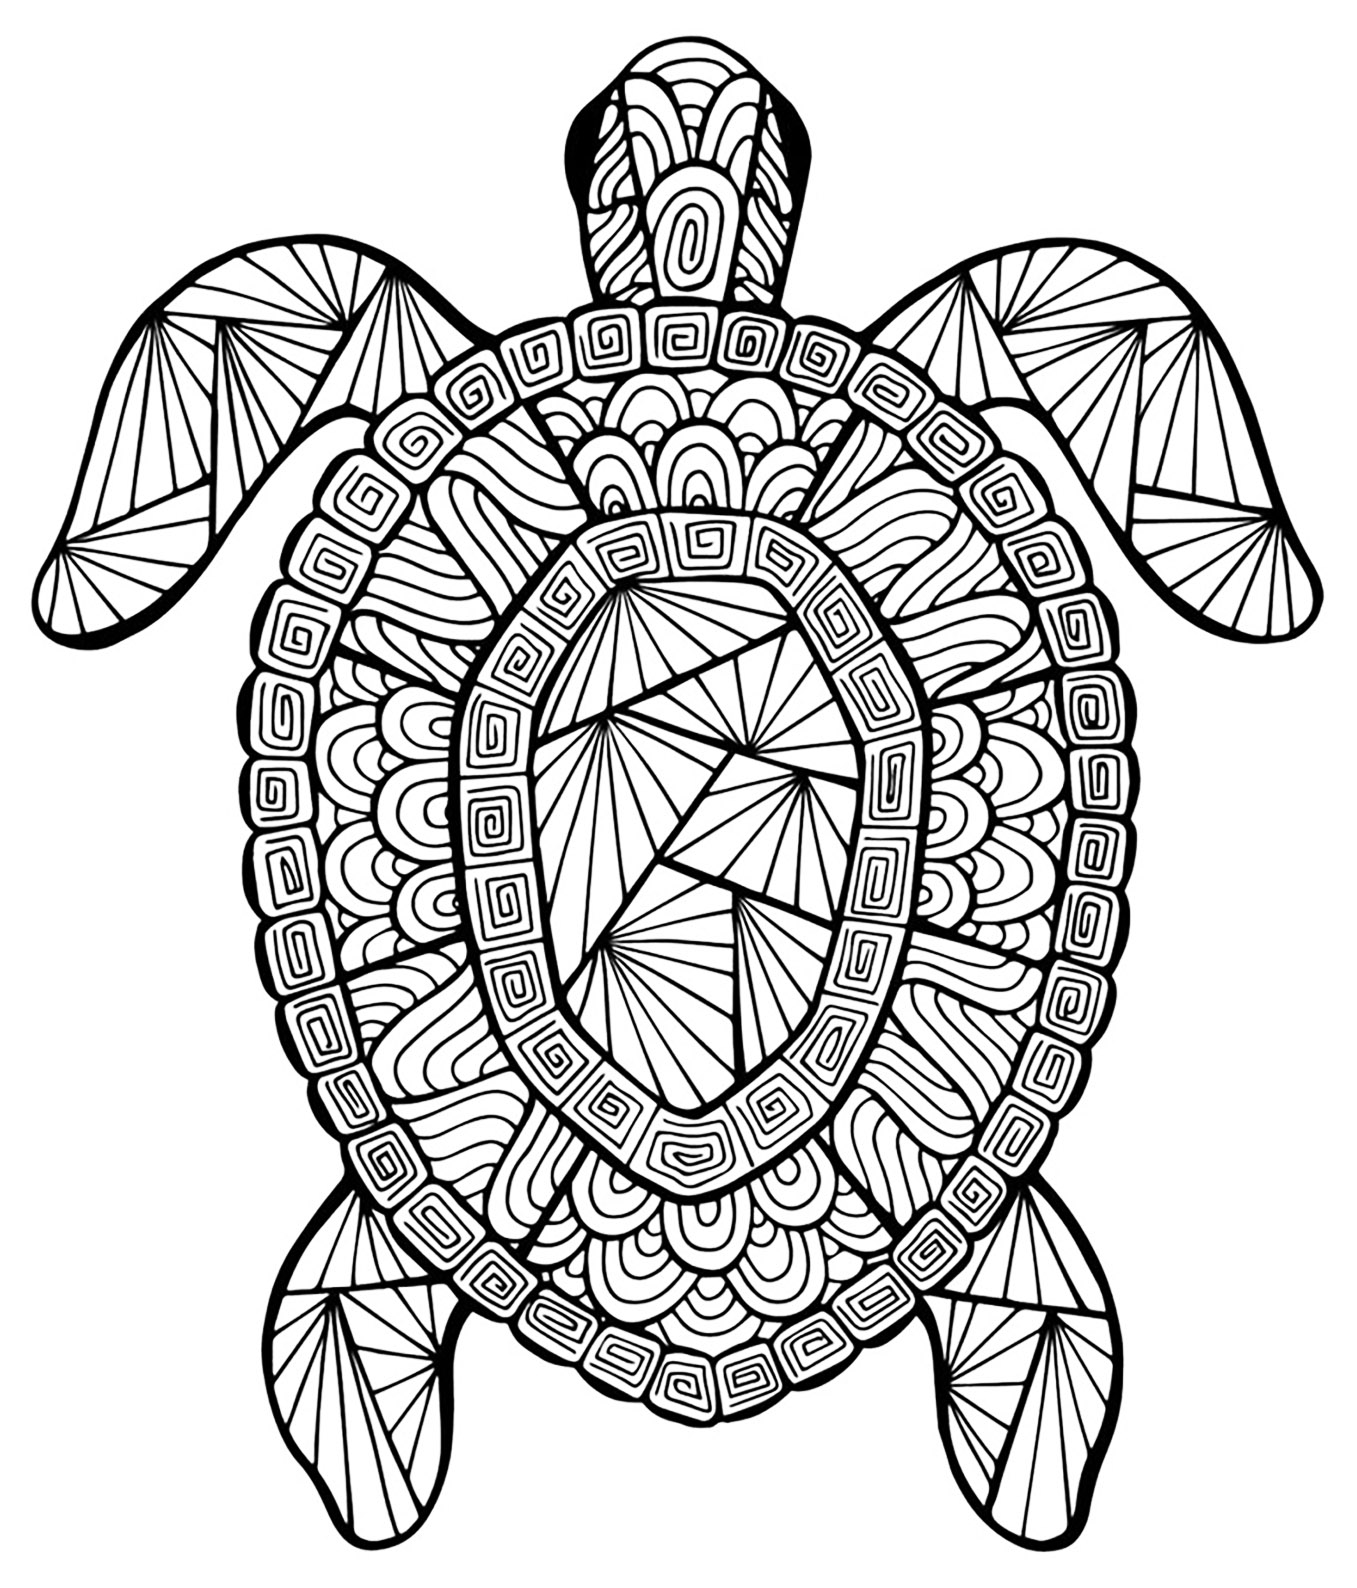 Une tortue aux motifs complexes, à imprimer et colorier